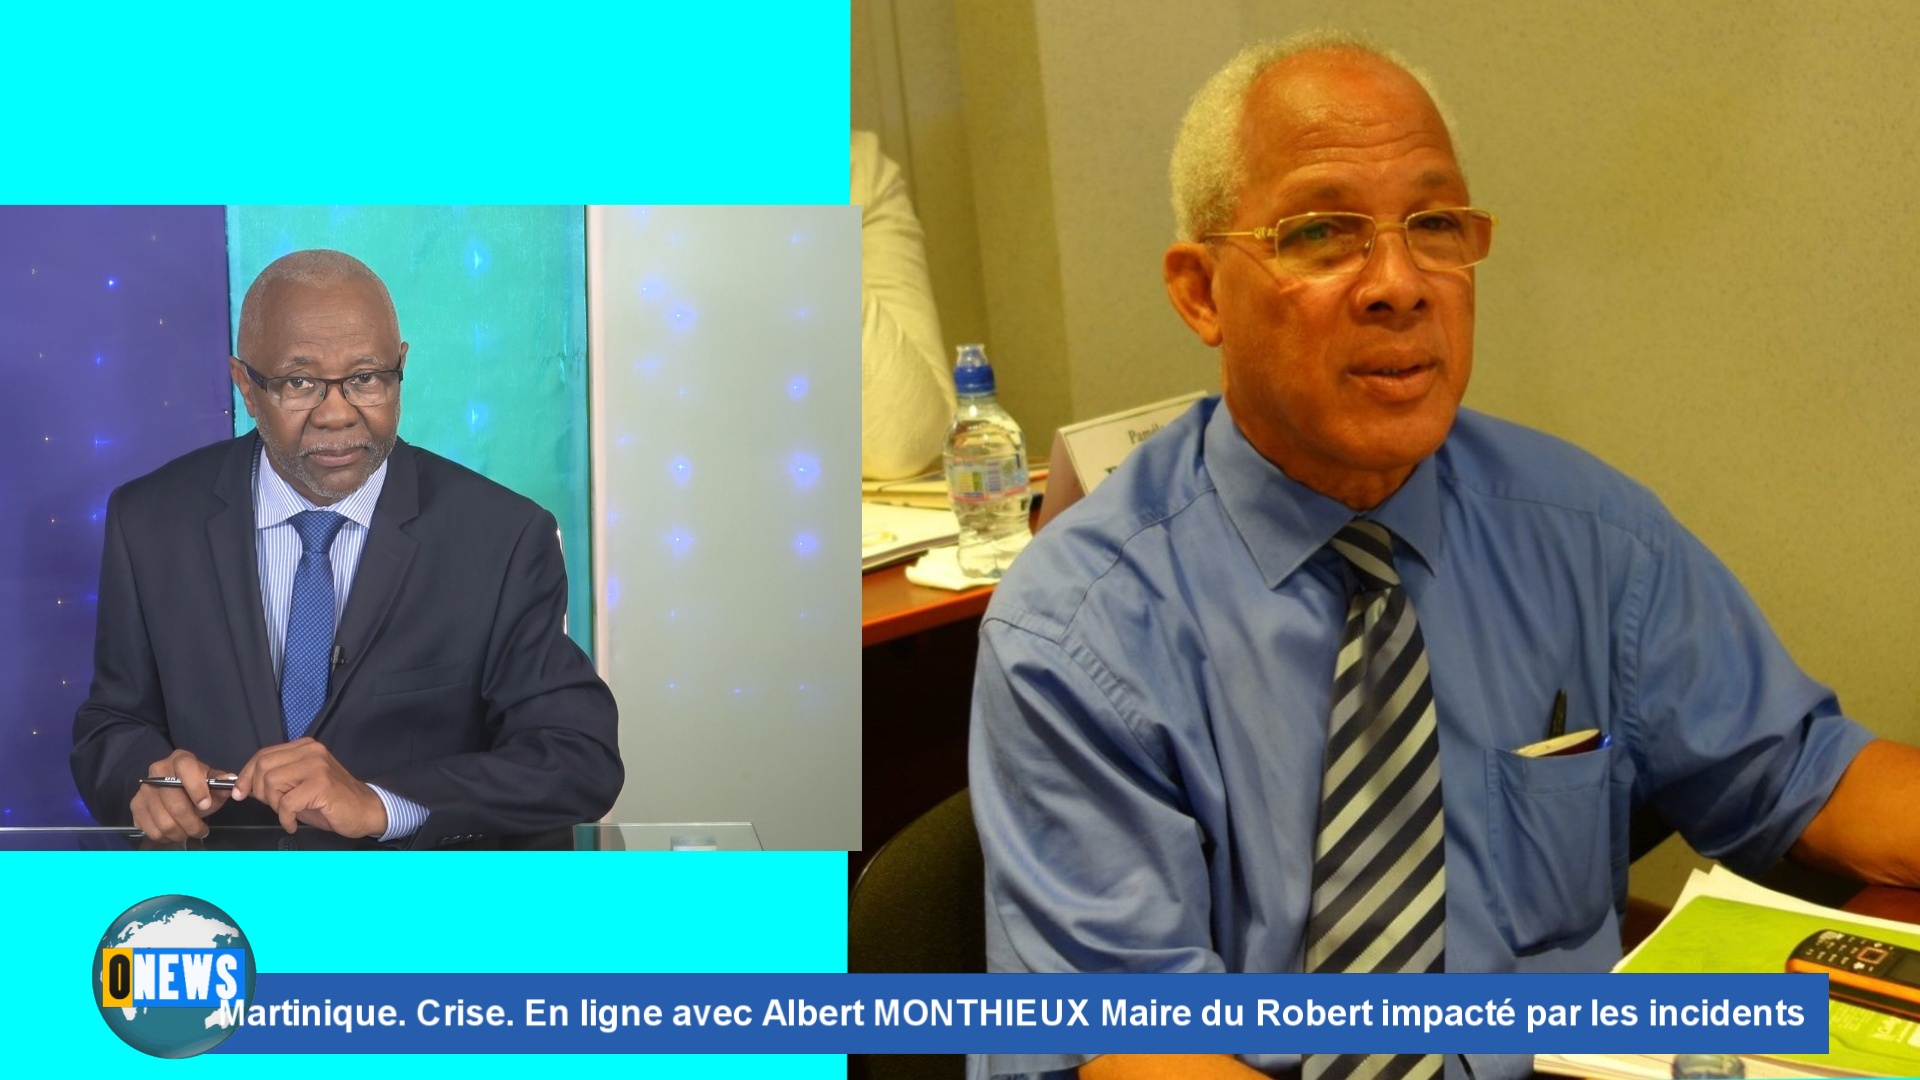 [Vidéo] Martinique. Onews en ligne avec le Maire du Robert impacté par les incidents